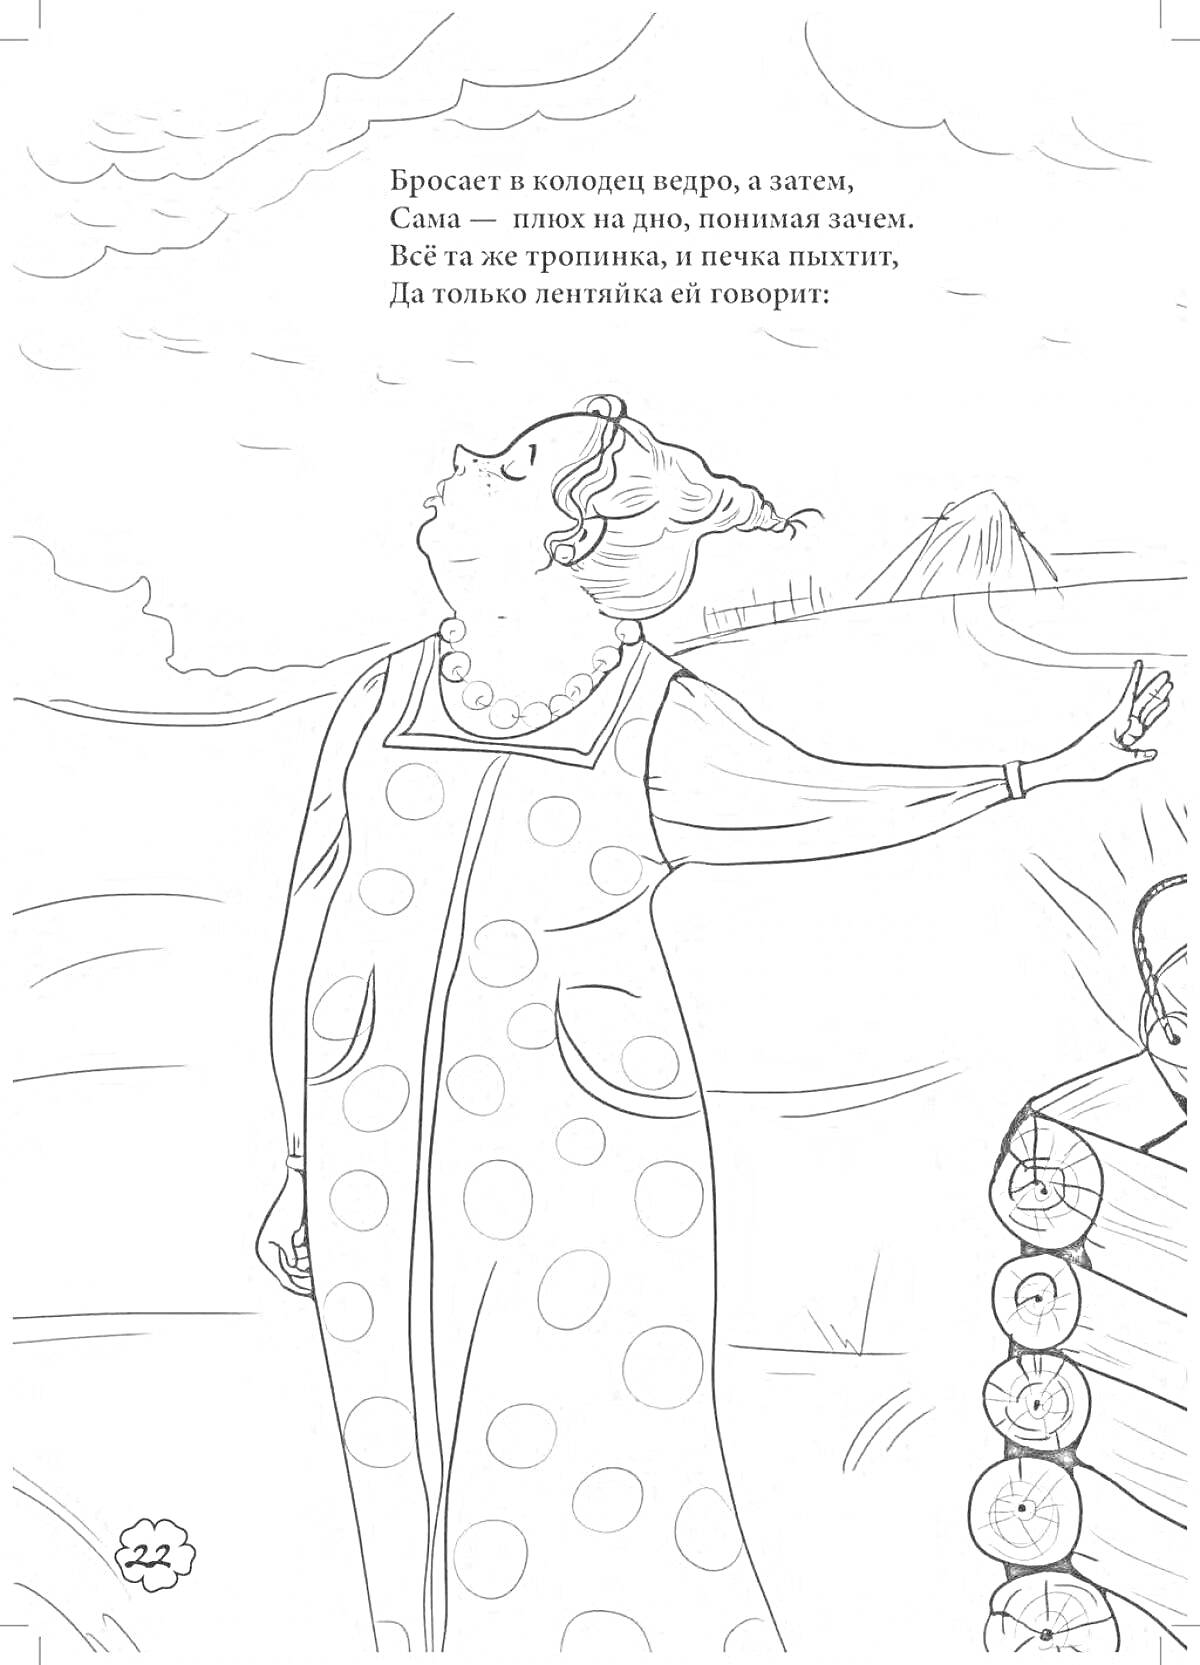 Раскраска Женщина в платье с гороховым рисунком у плетня на свежем воздухе; на небе облака, в углу рисунок дерева; текст на изображении